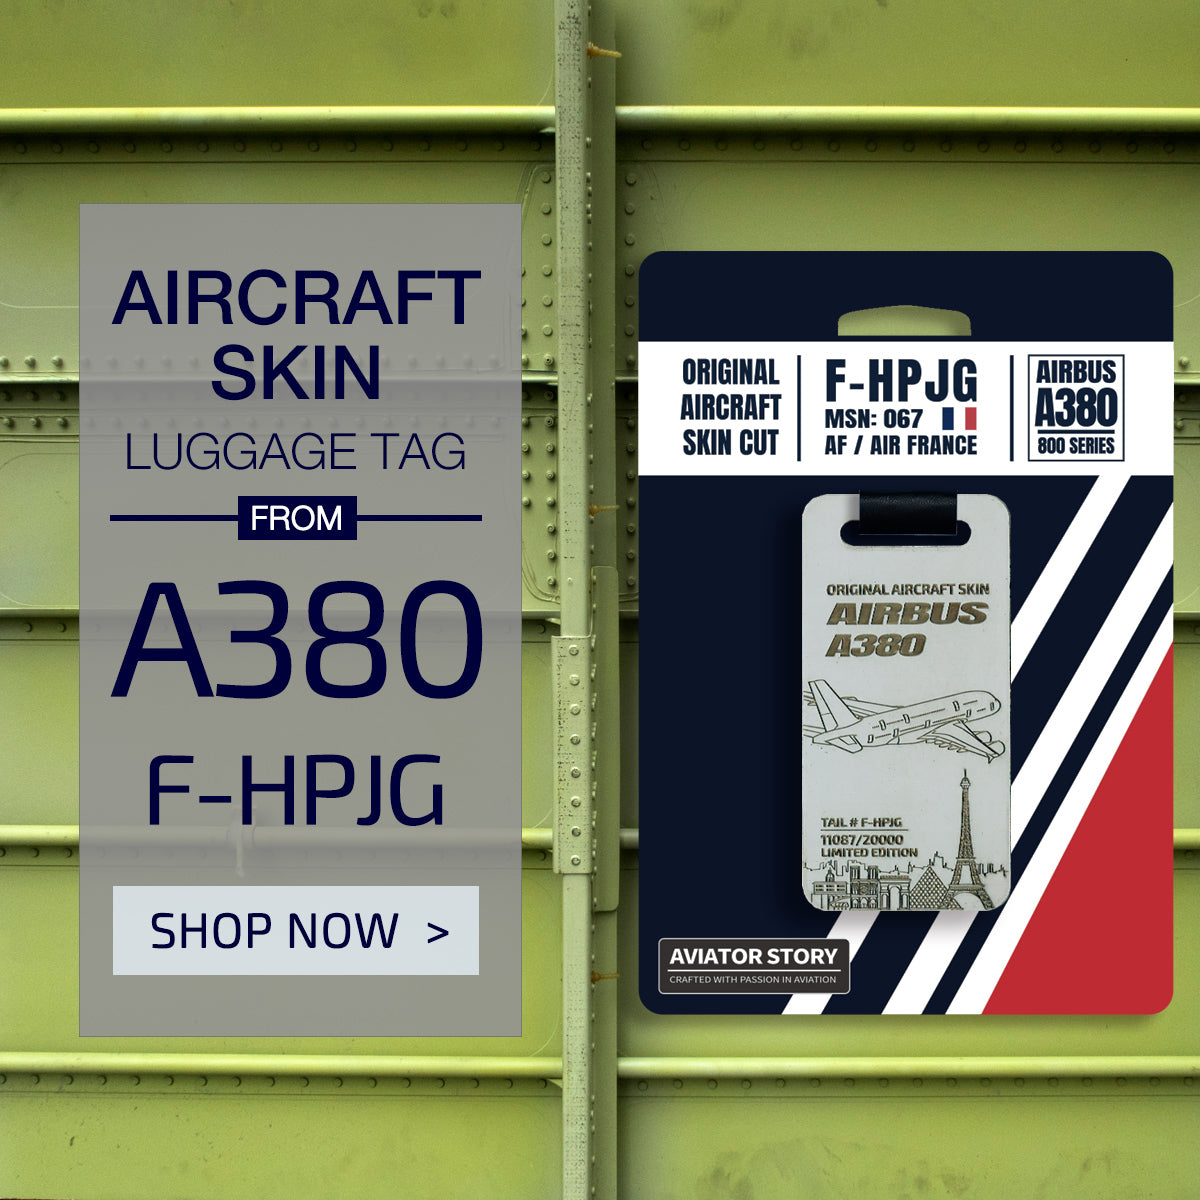 Air France Airbus A380 plane skin tag F-HPJG